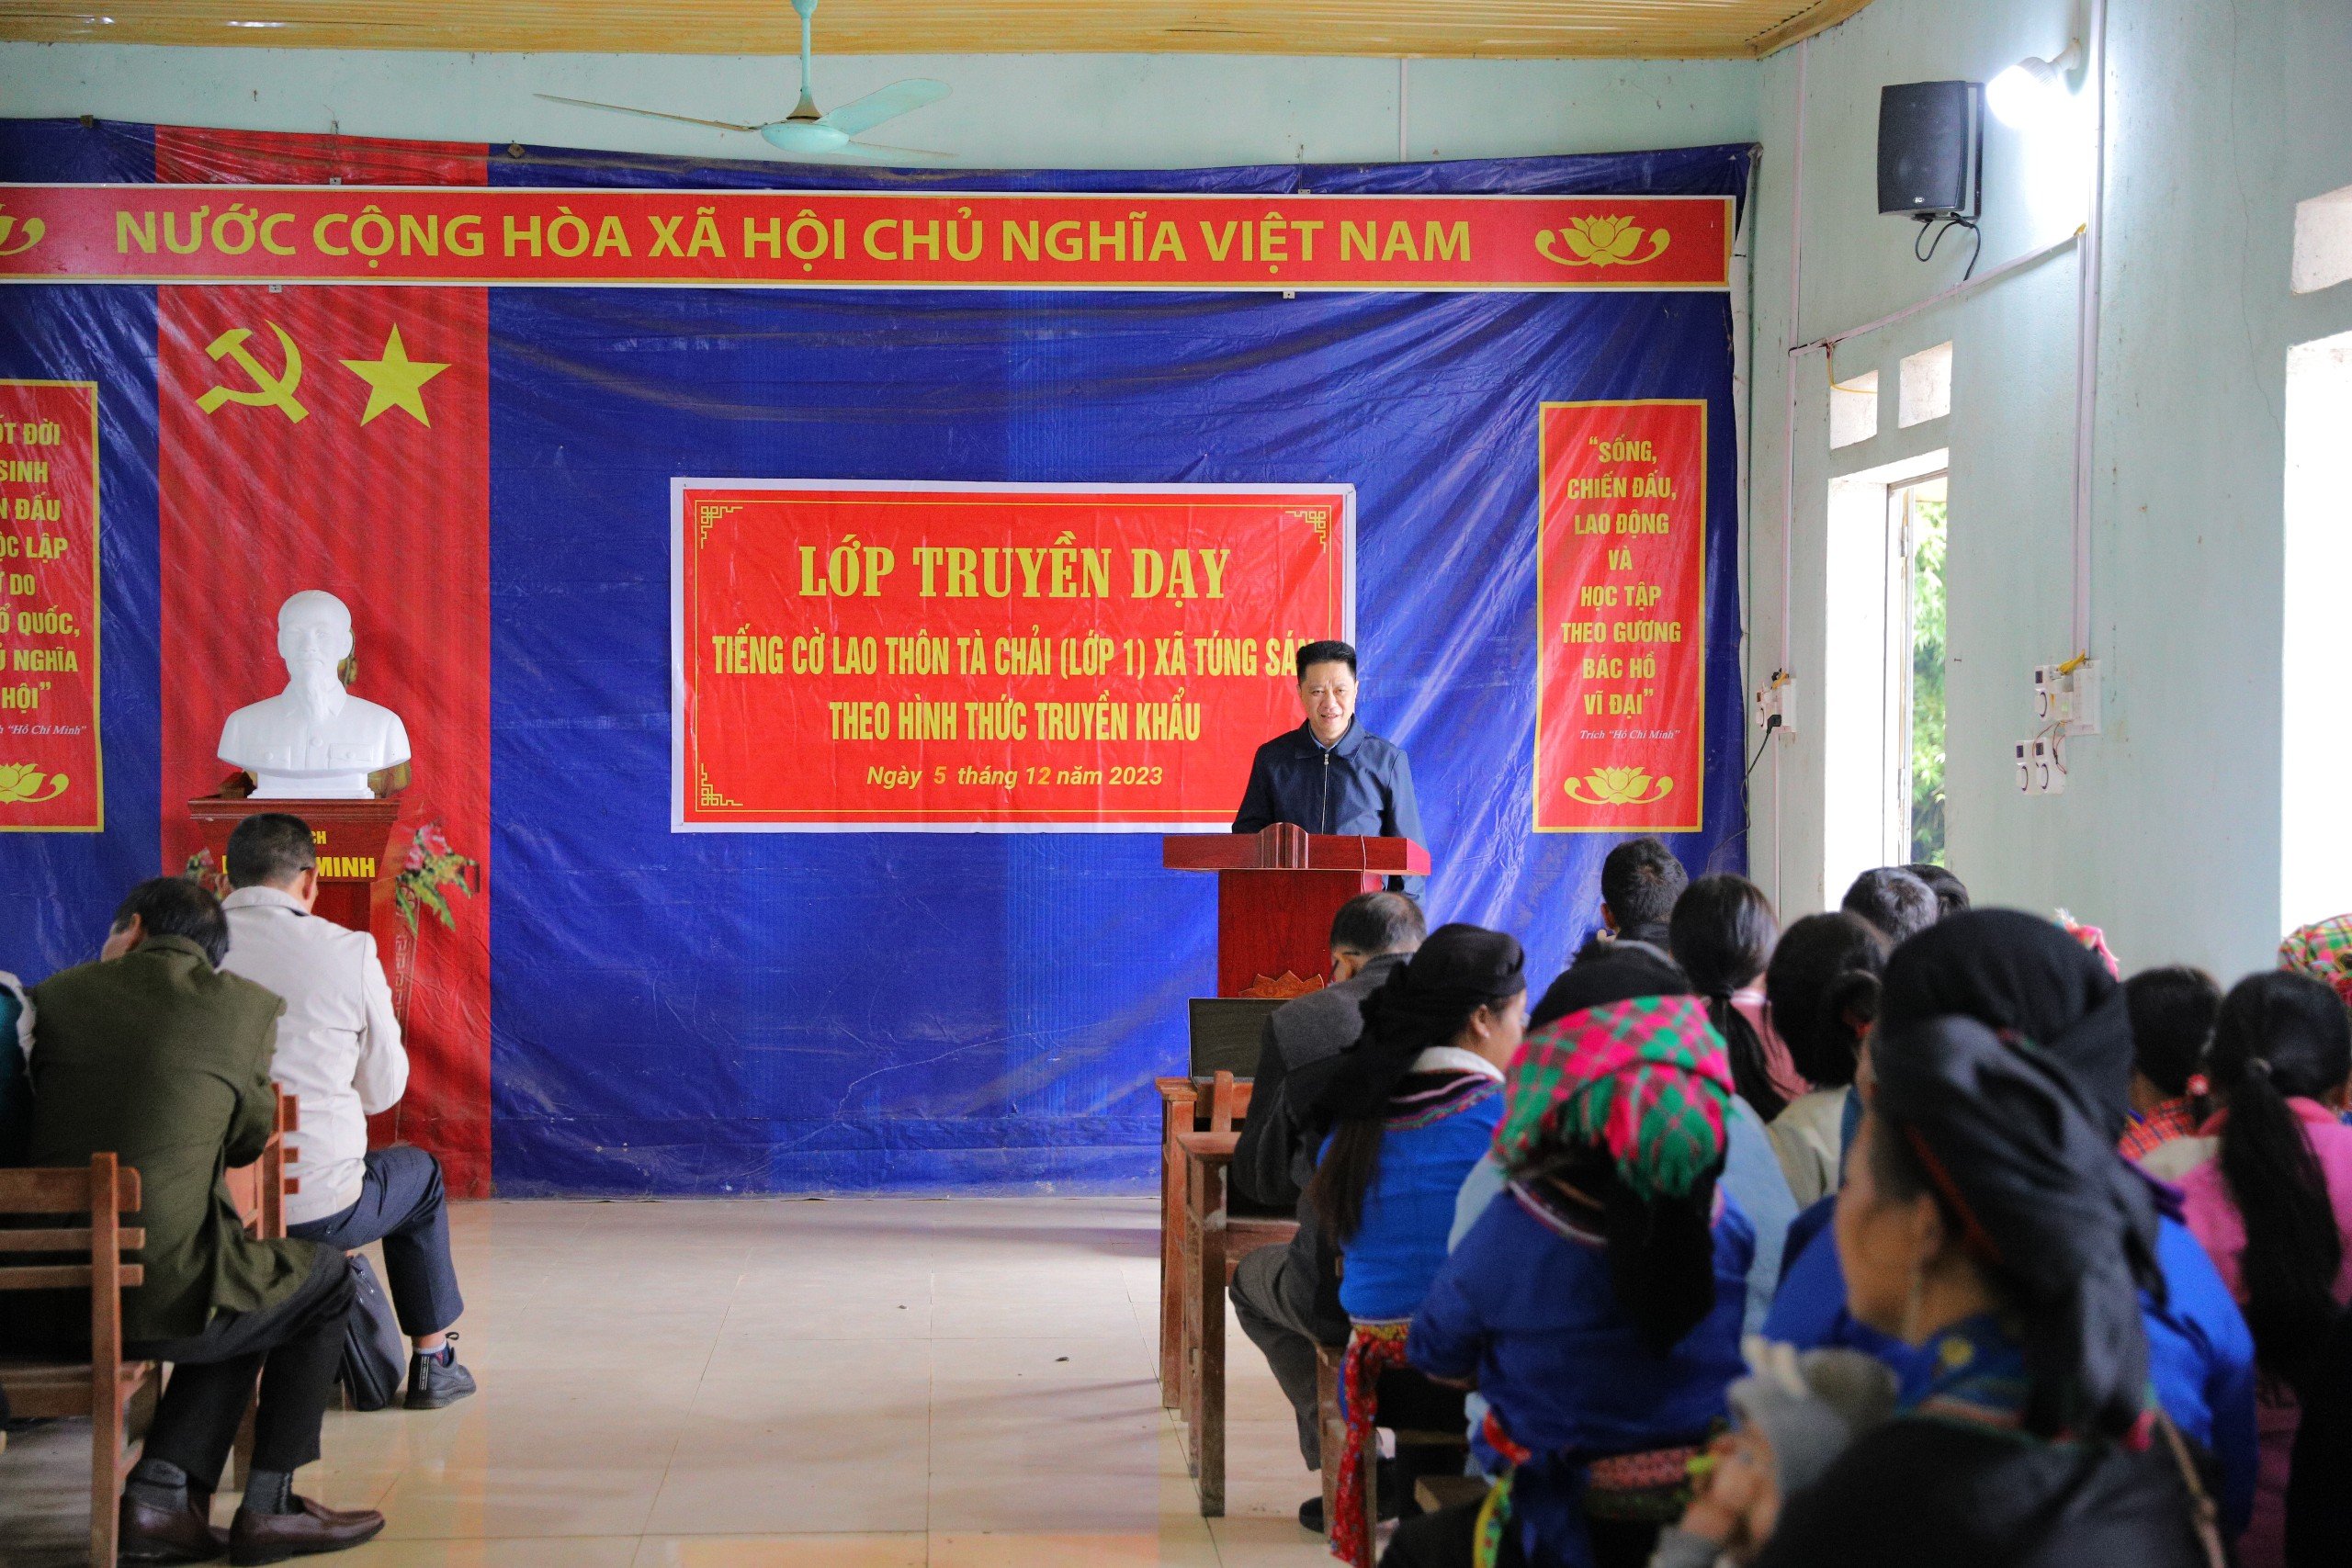 Hoàng Su Phì Bế giảng lớp truyền dạy tiếng dân tộc Cờ Lao tại xã Túng Sán